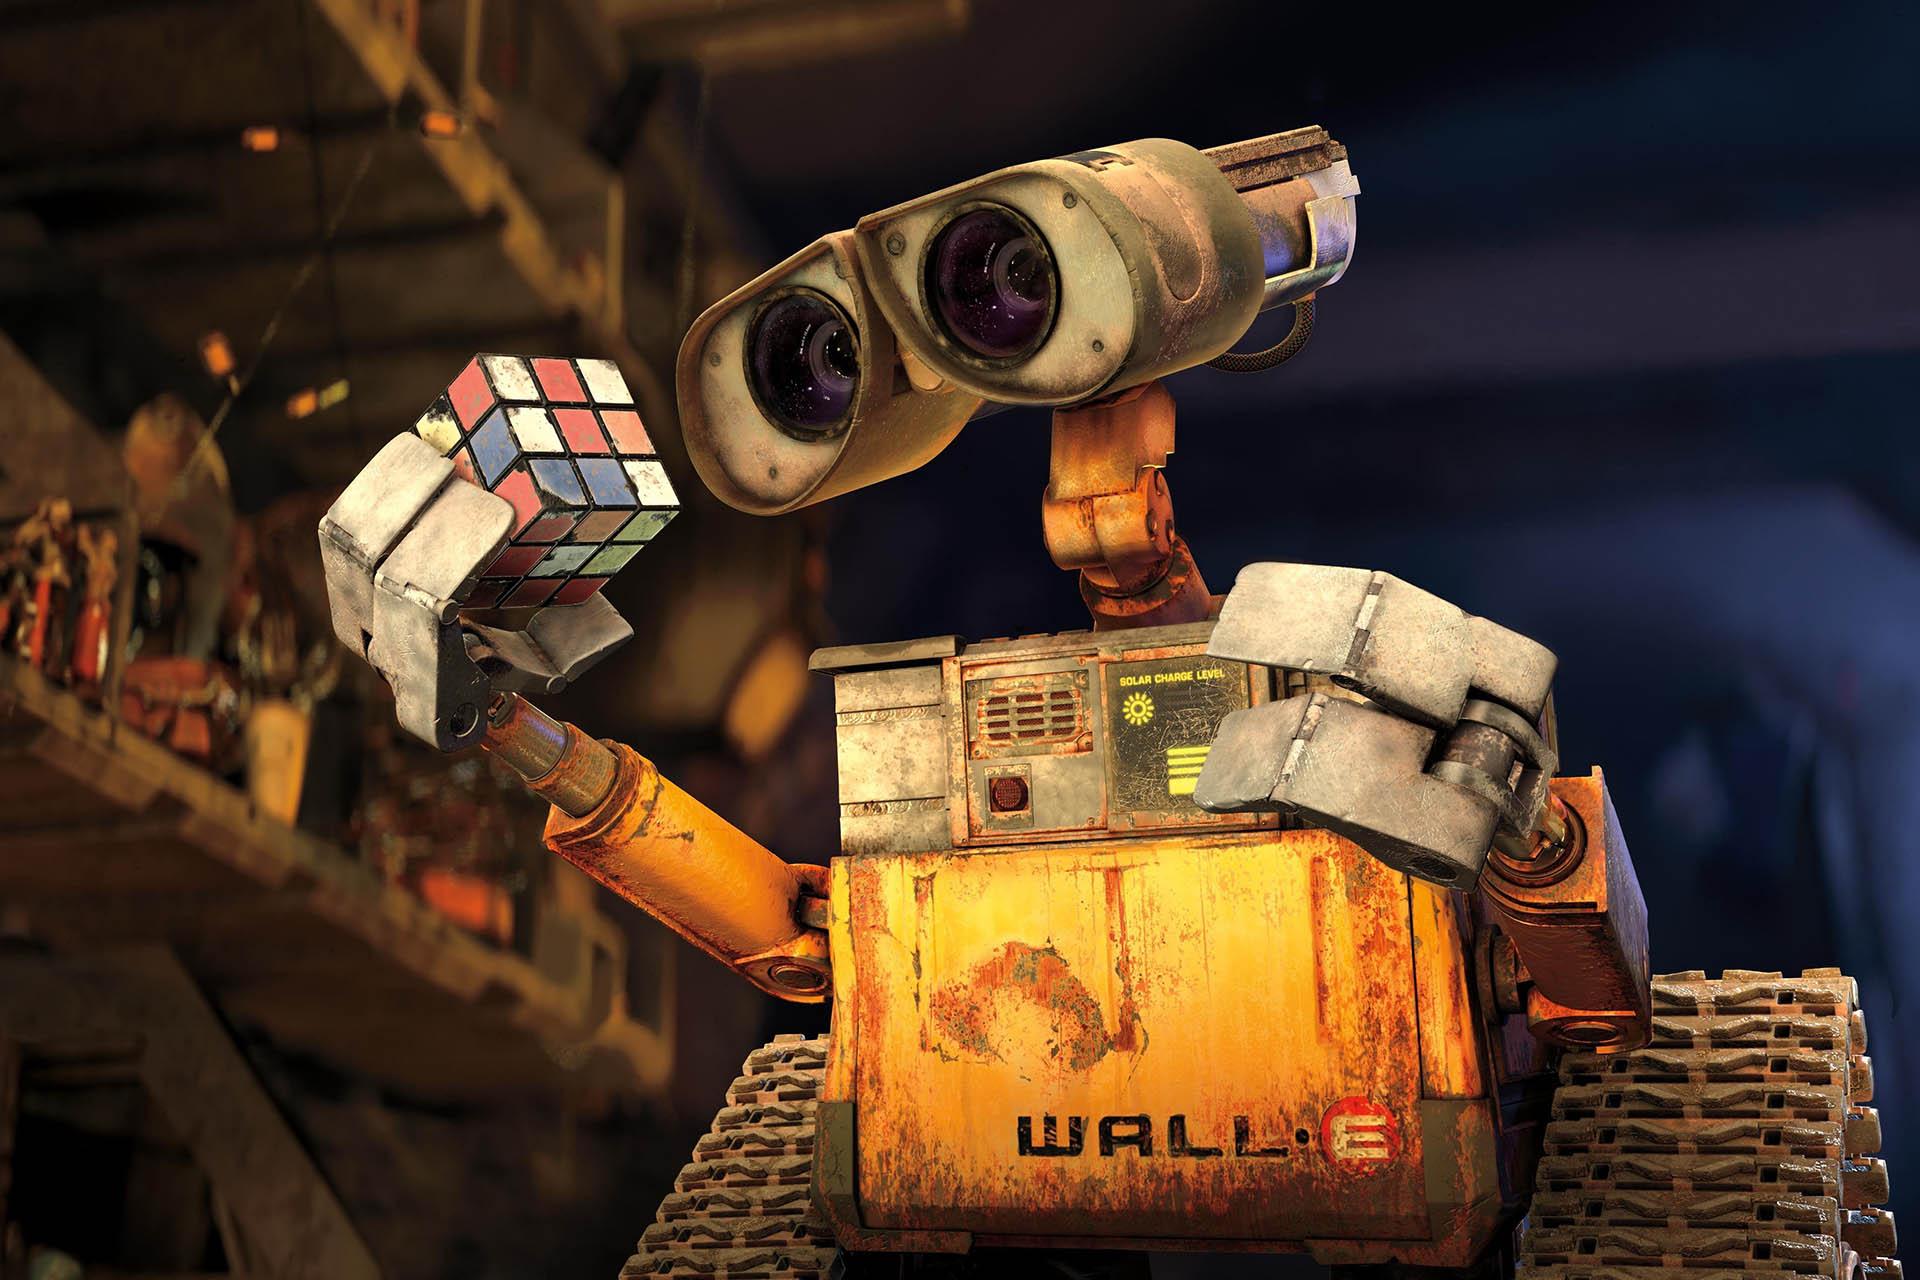 وال-ای درحال نگاه کردن به یک مکعب روبیک در فیلم Wall-e